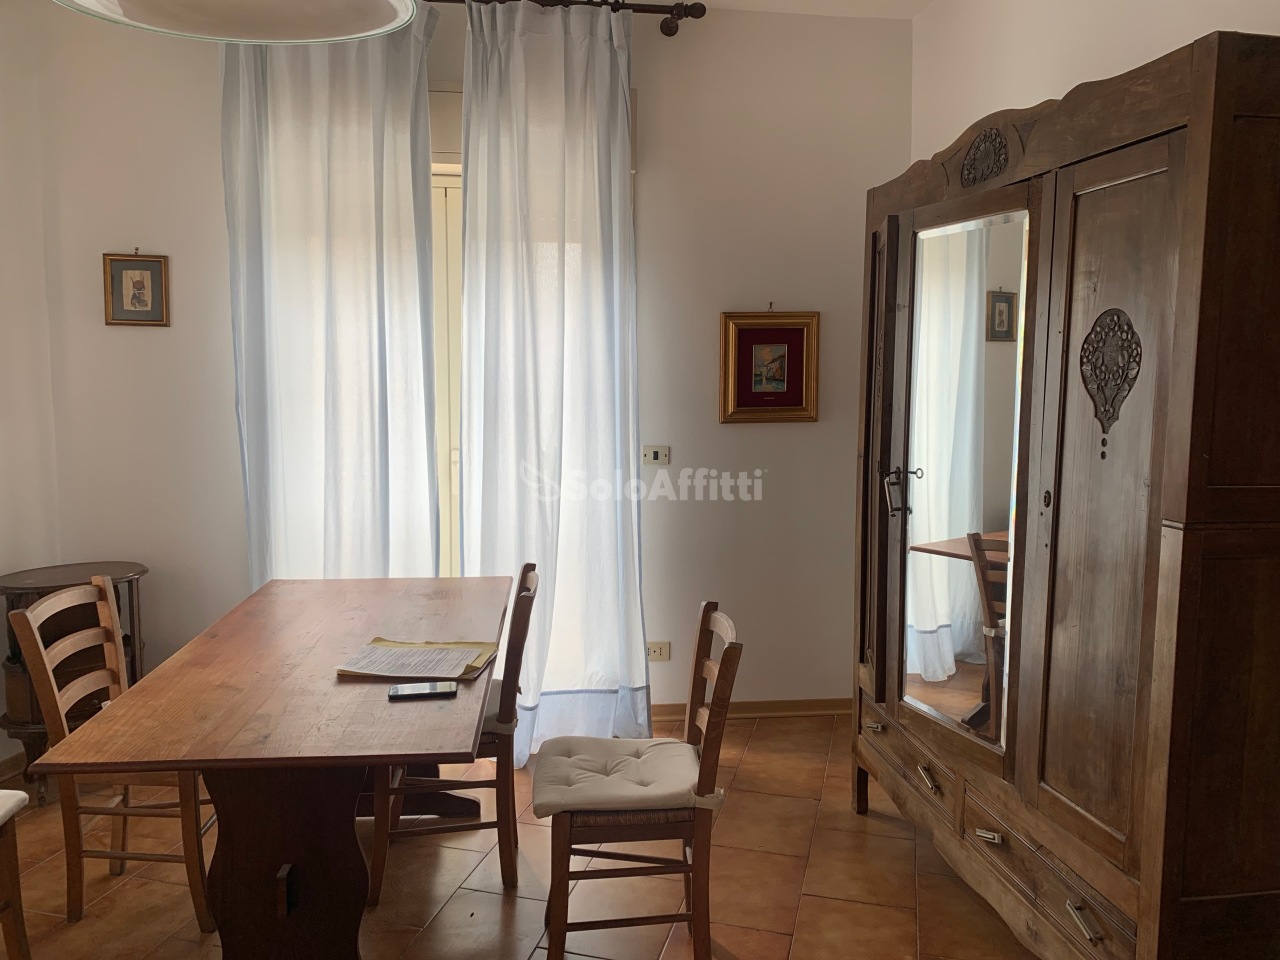 Appartamento in affitto a Aci Sant'Antonio, 3 locali, prezzo € 450 | PortaleAgenzieImmobiliari.it